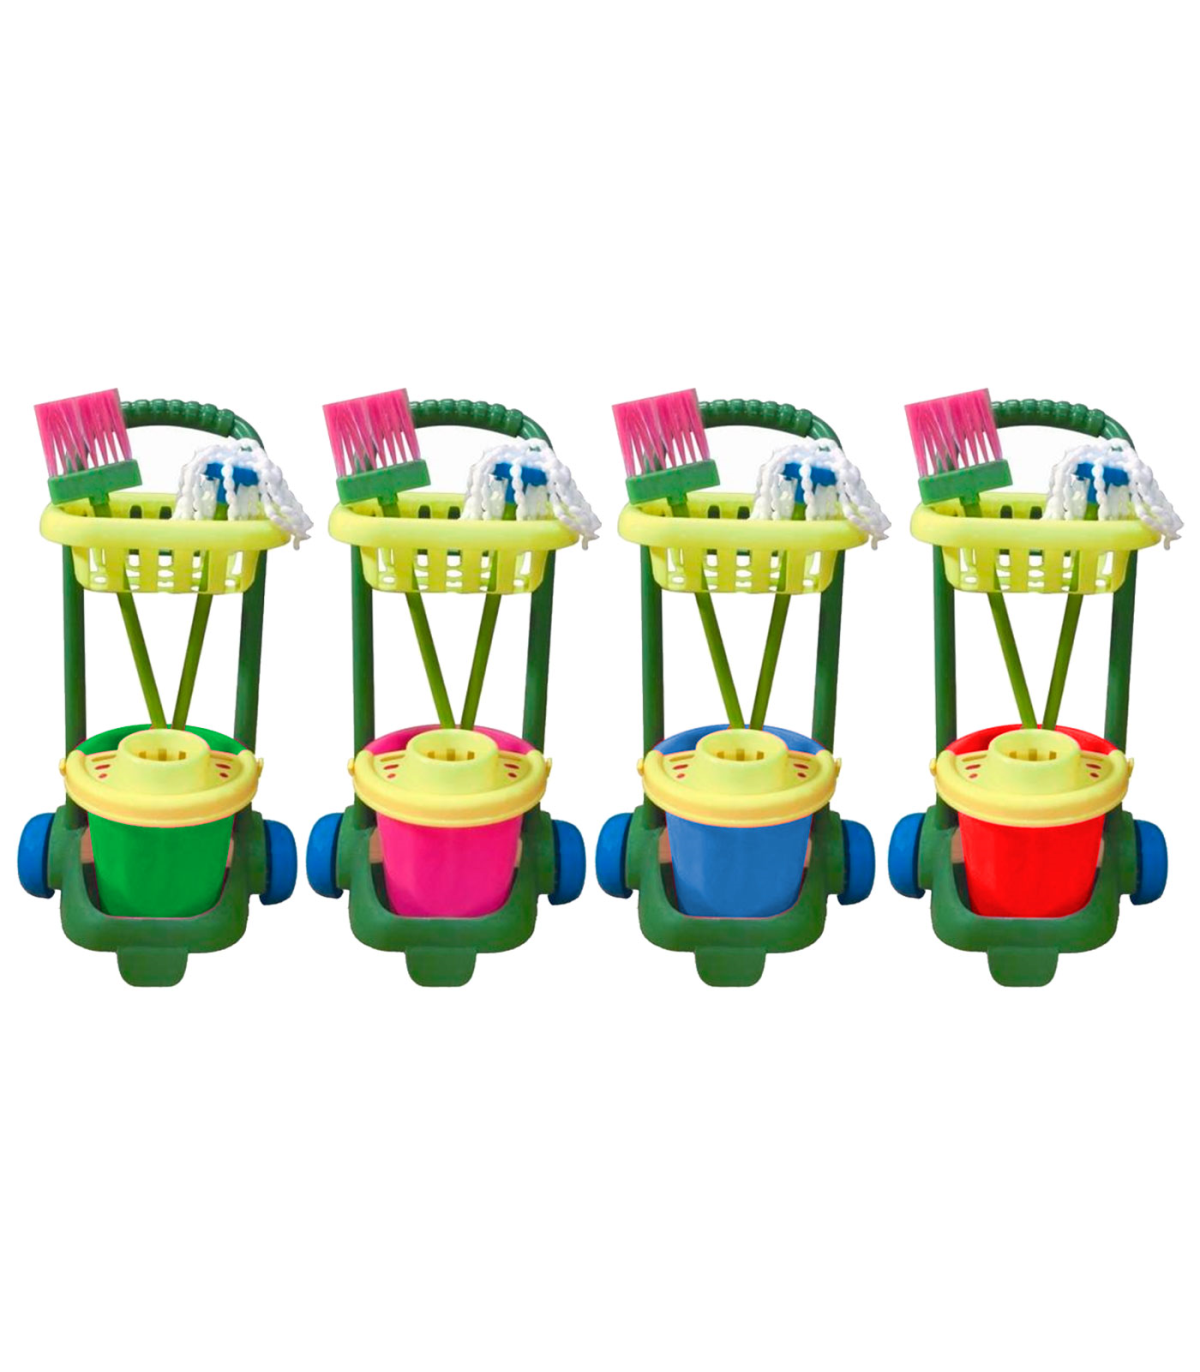 Tradineur - Carro de limpieza infantil de juguete con accesorios 57 x 31 x  20 cm, plástico resistente, cubo, fregona, escoba, ba